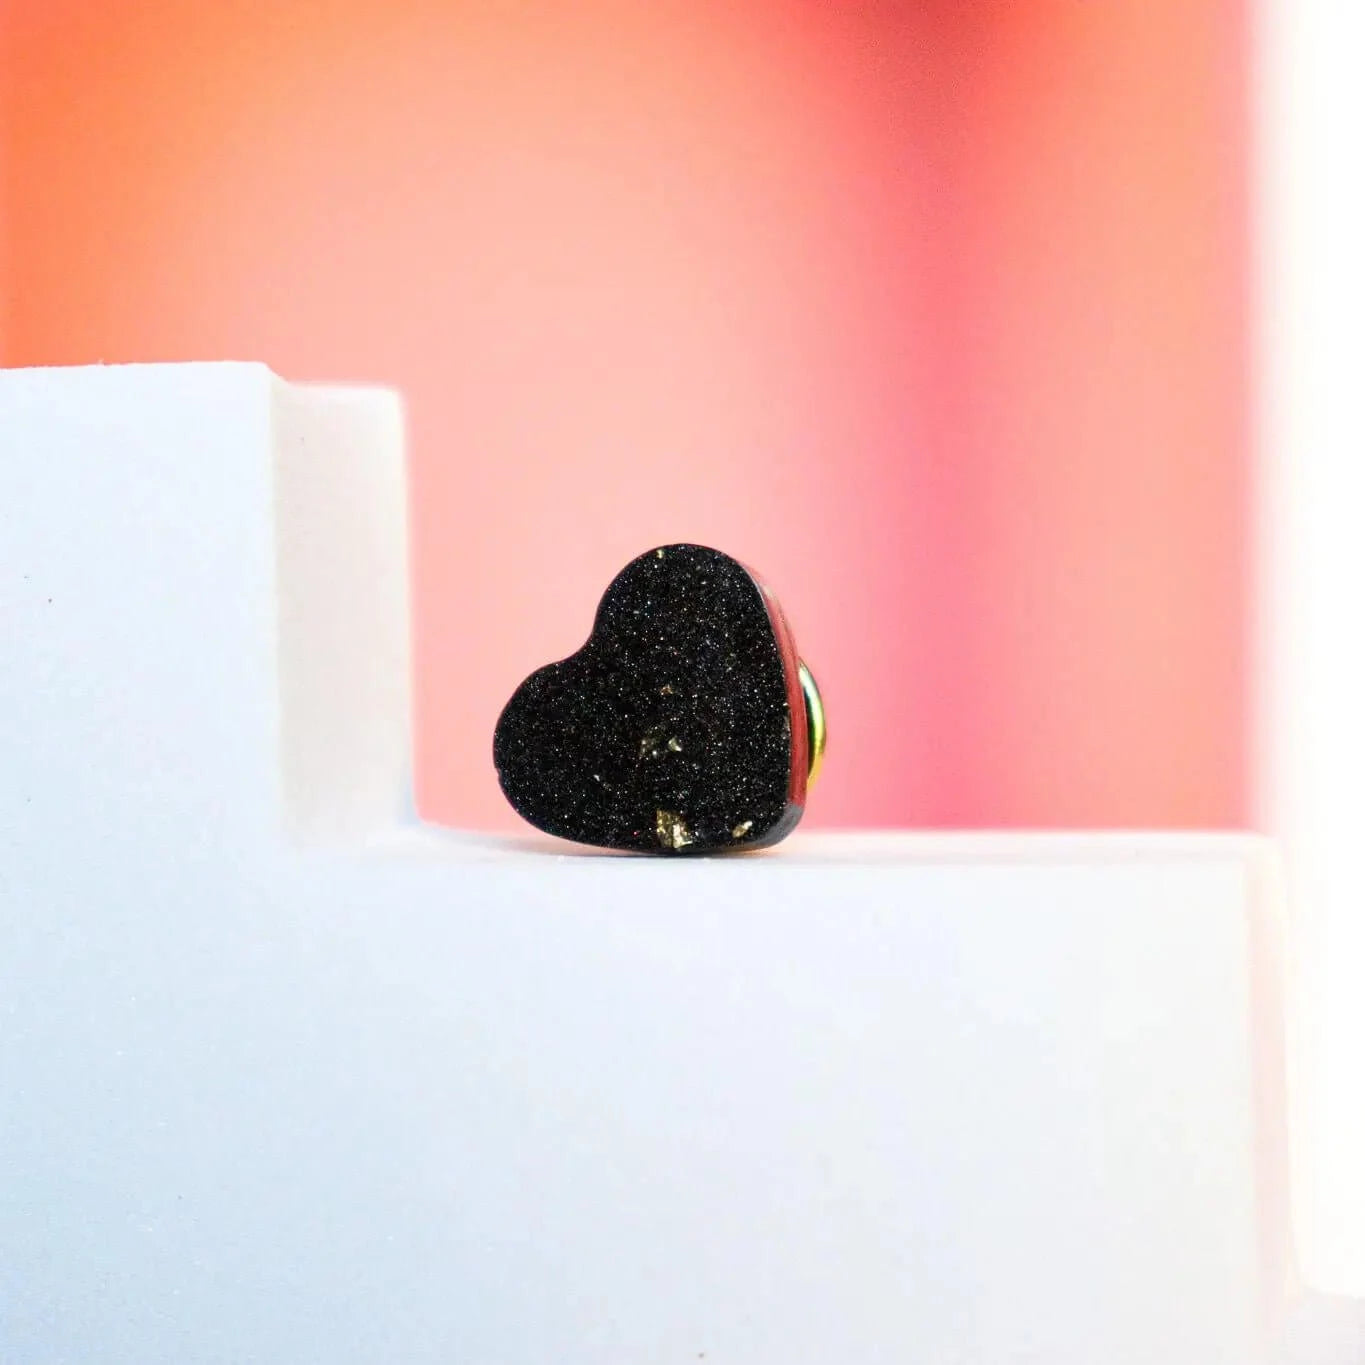 Mini Pin's coeur noir à feuille d'or - Autours Madame